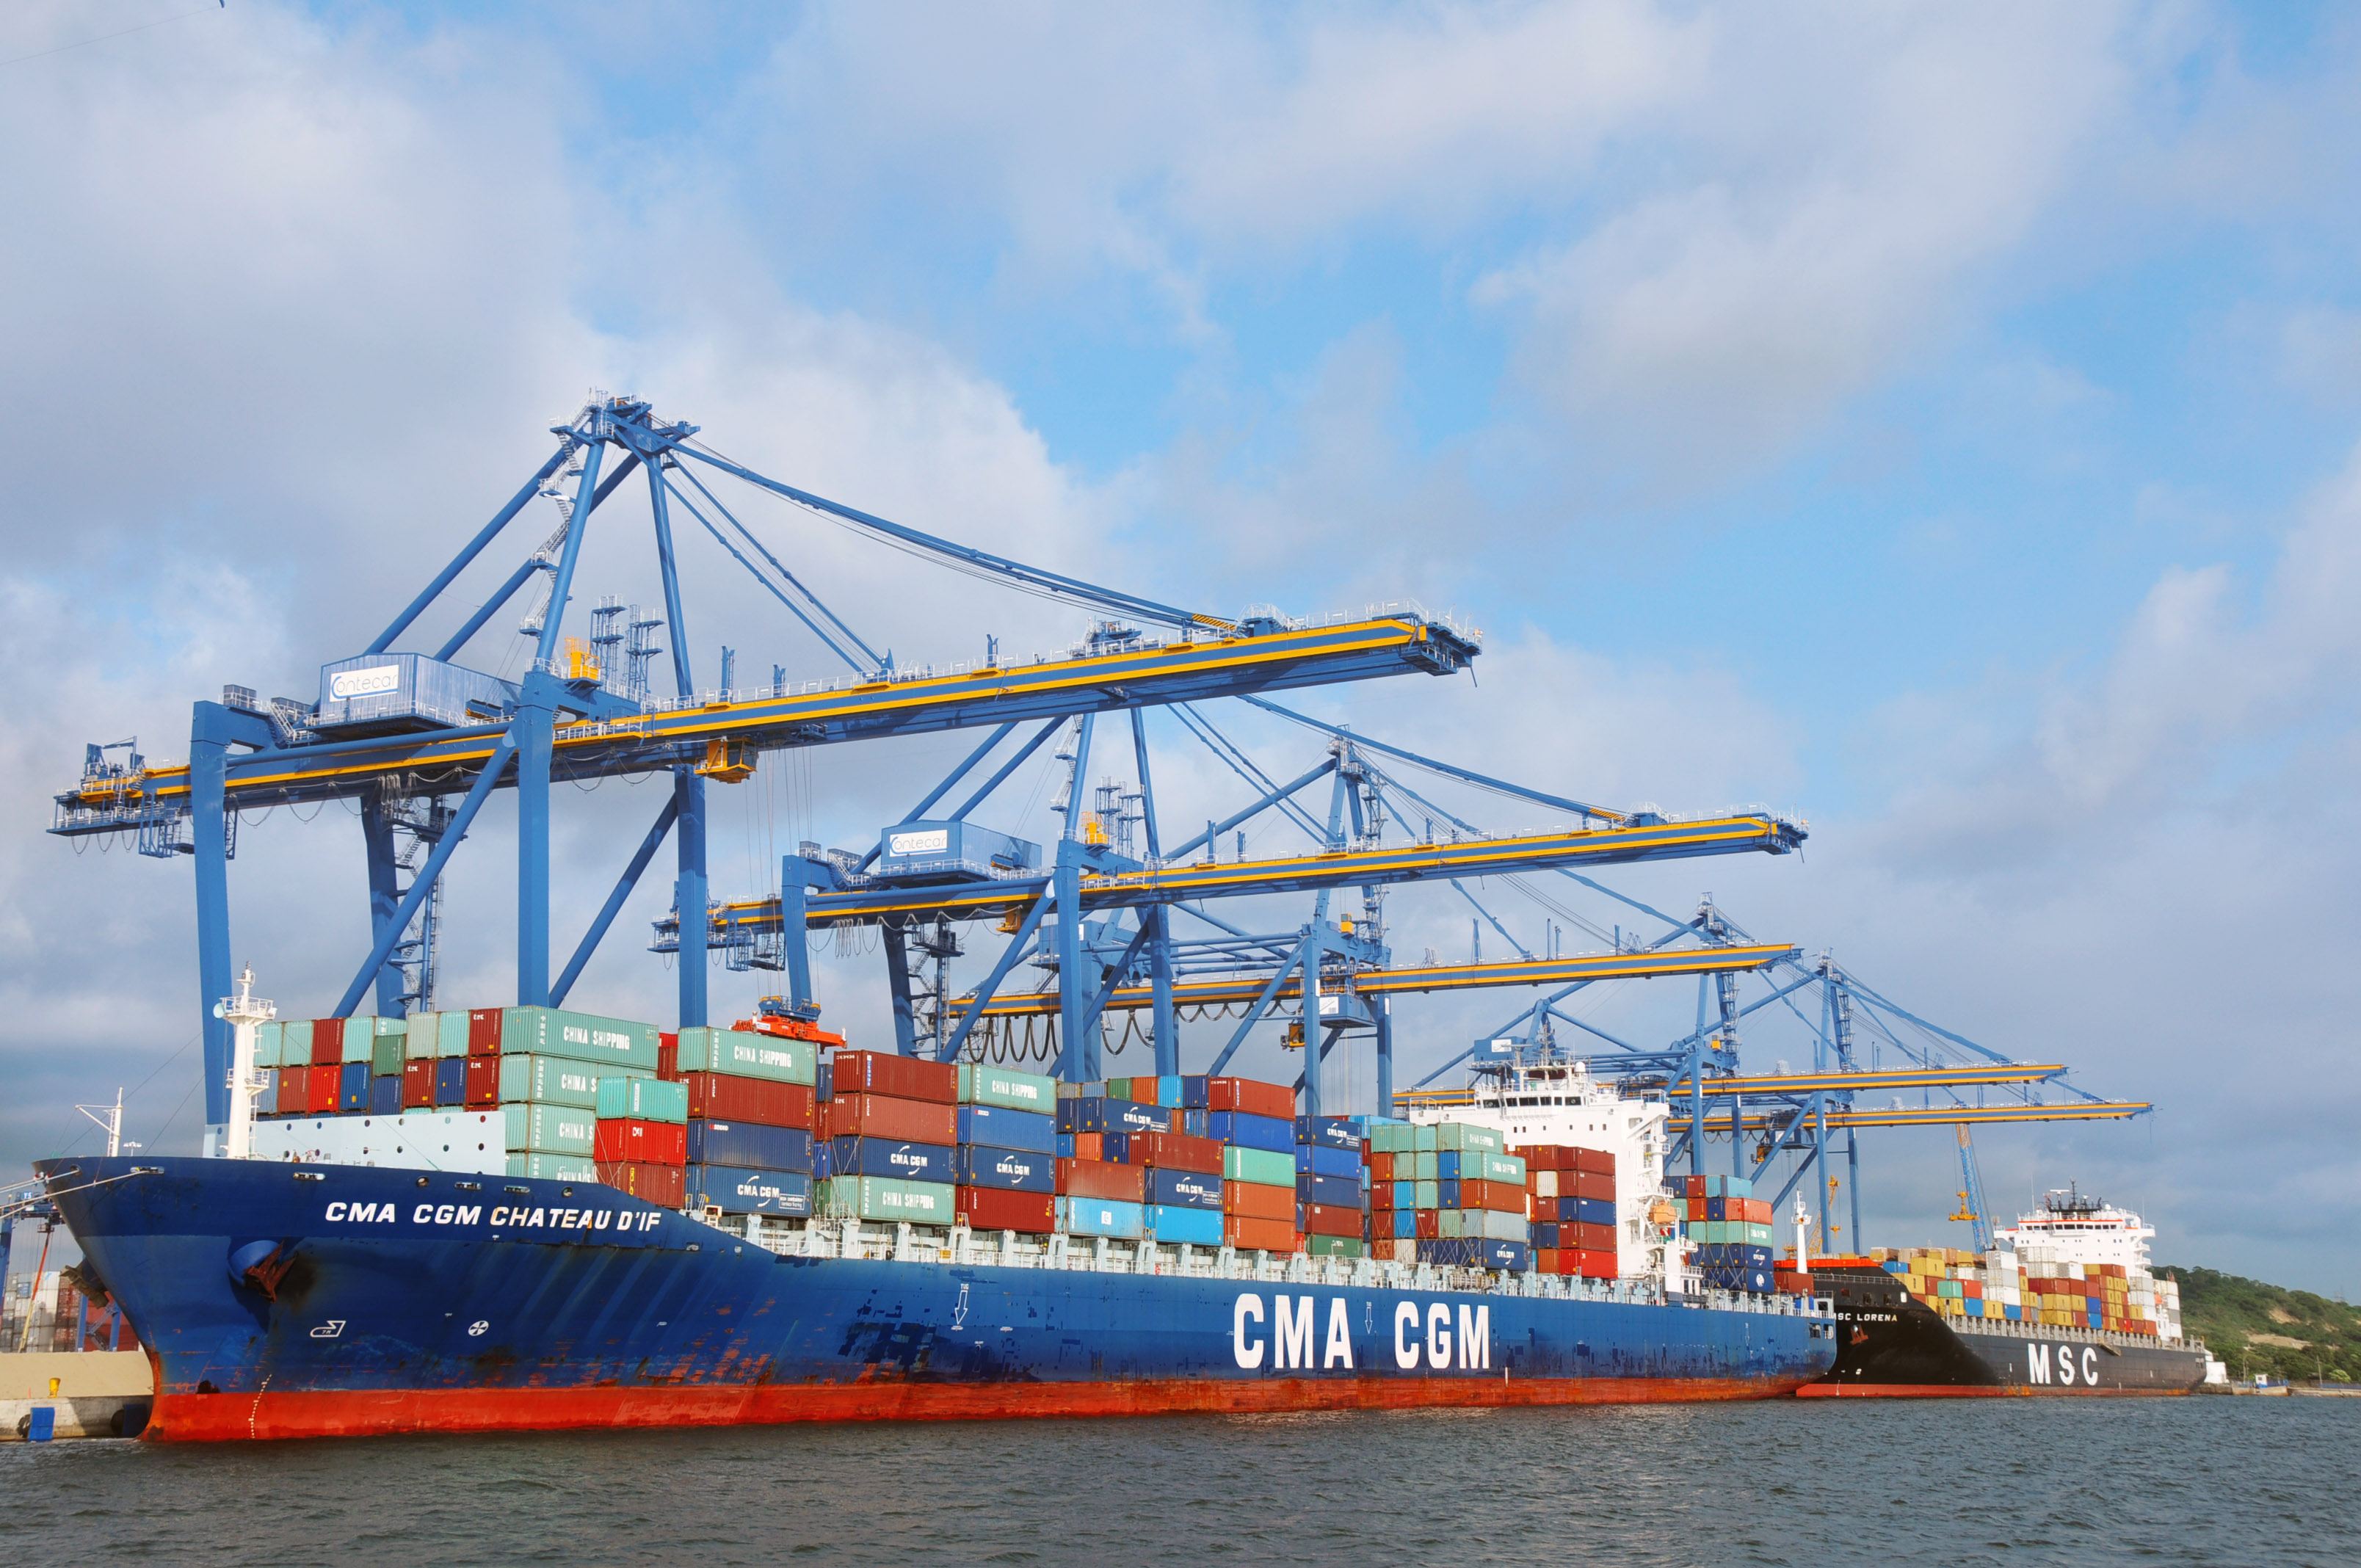 Autorización de operaciones de comercio exterior en buque